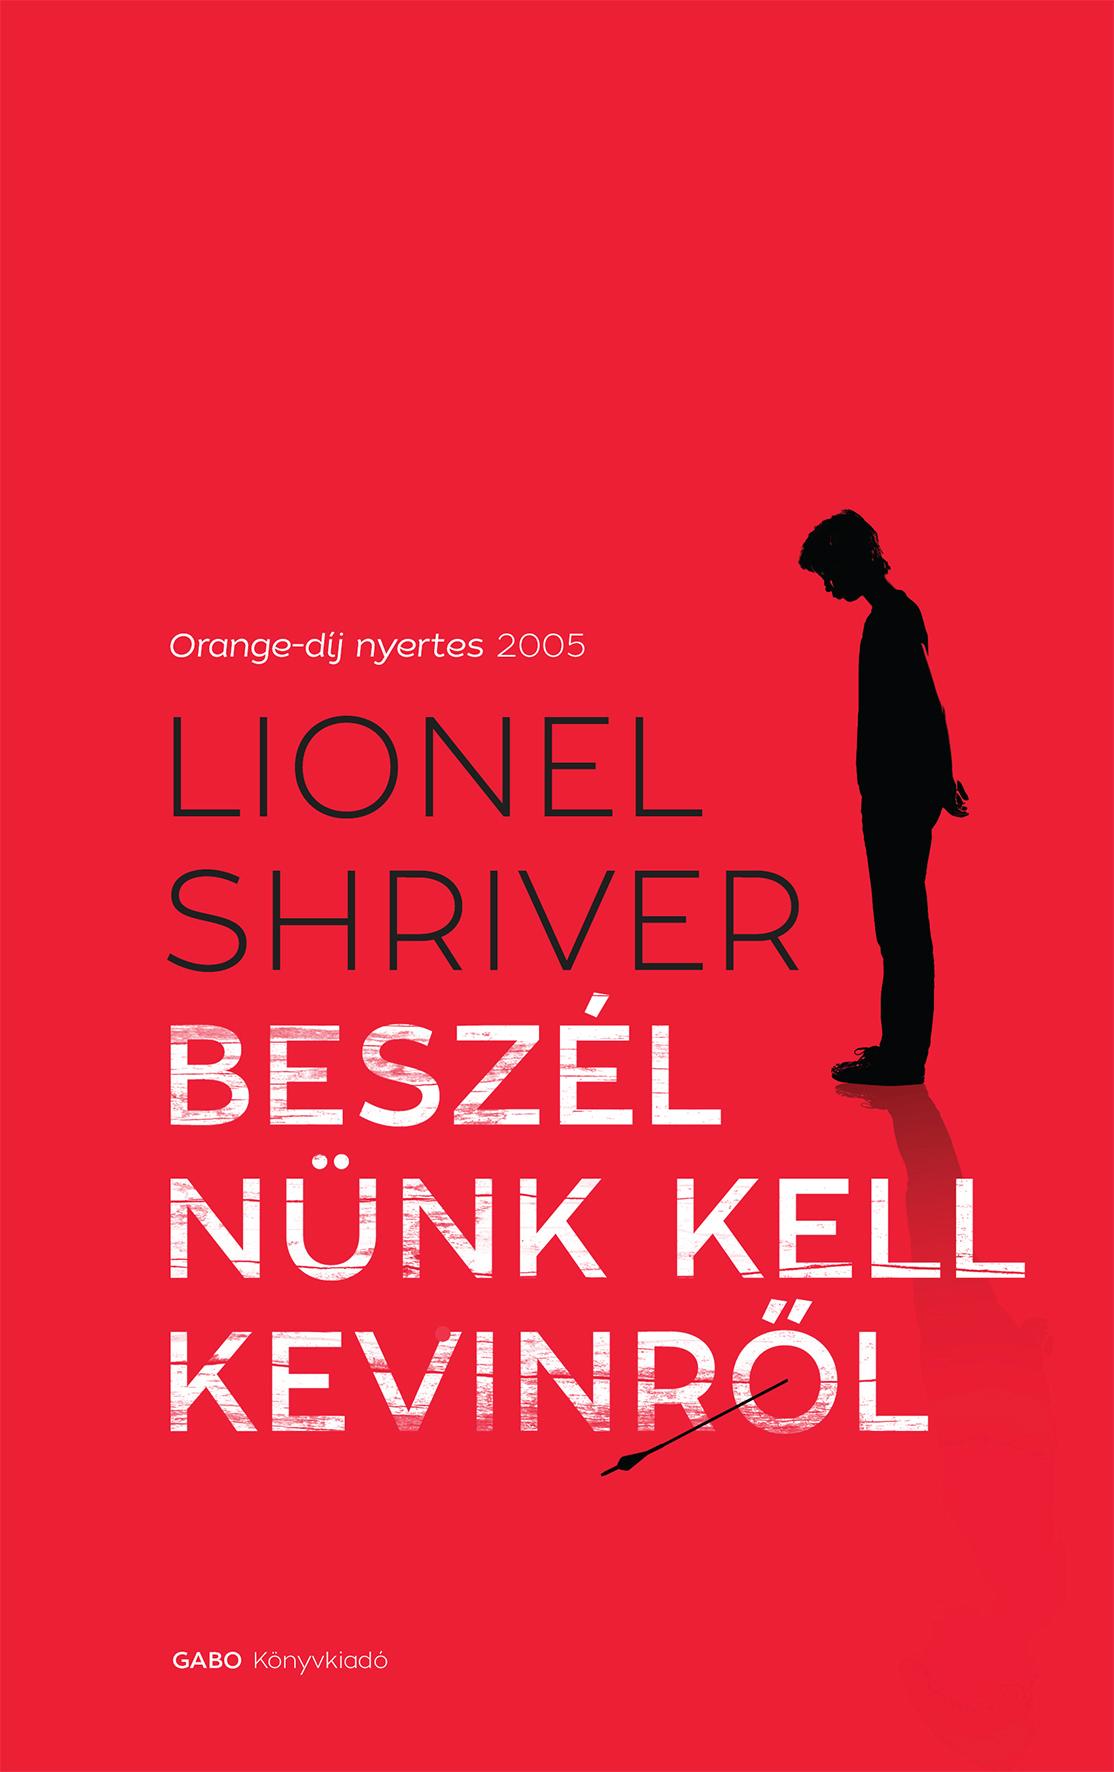 Lionel Shriver - Beszlnnk Kell Kevinrl - j!